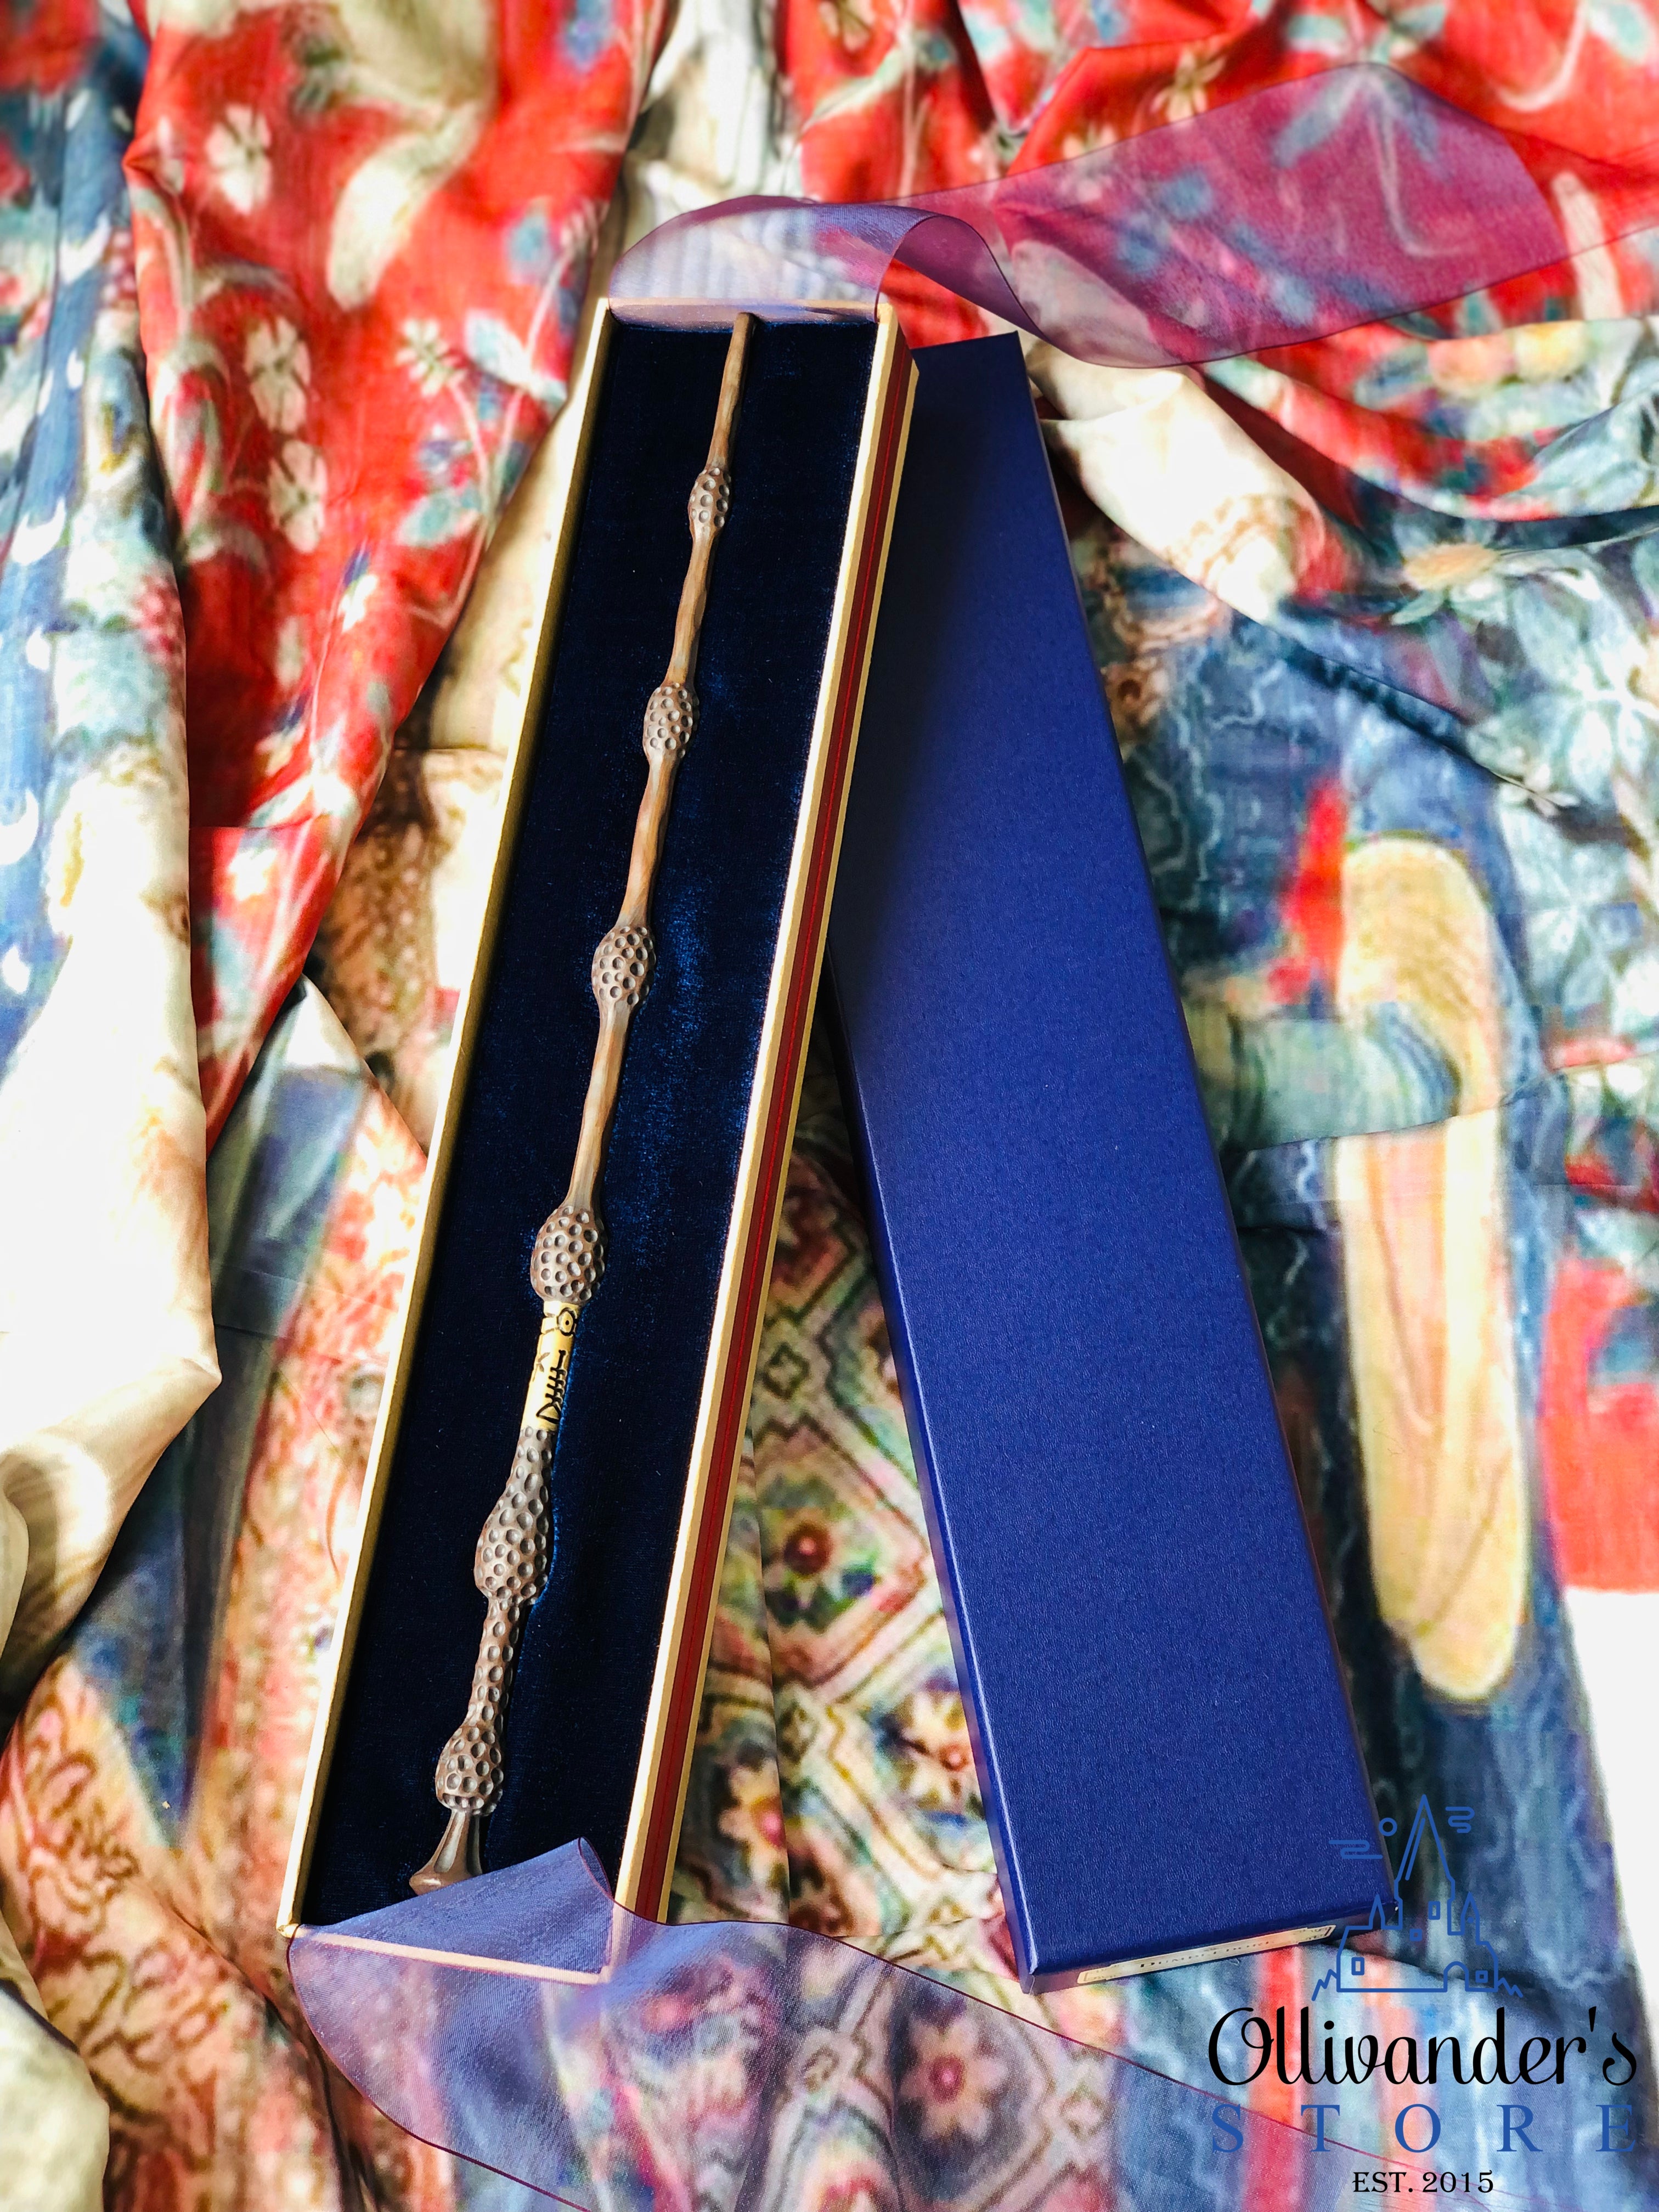 ალბუს დამბლდორის ჰარი პოტერის ჰოგვორტსის ნობლ ქოლექშენის Noble Collection ჯადოსნური საკოლექციო ჯოხი ჯოხები ჰარი პოტერის პროდუქცია აქსესუარები ნივთები მაღაზია